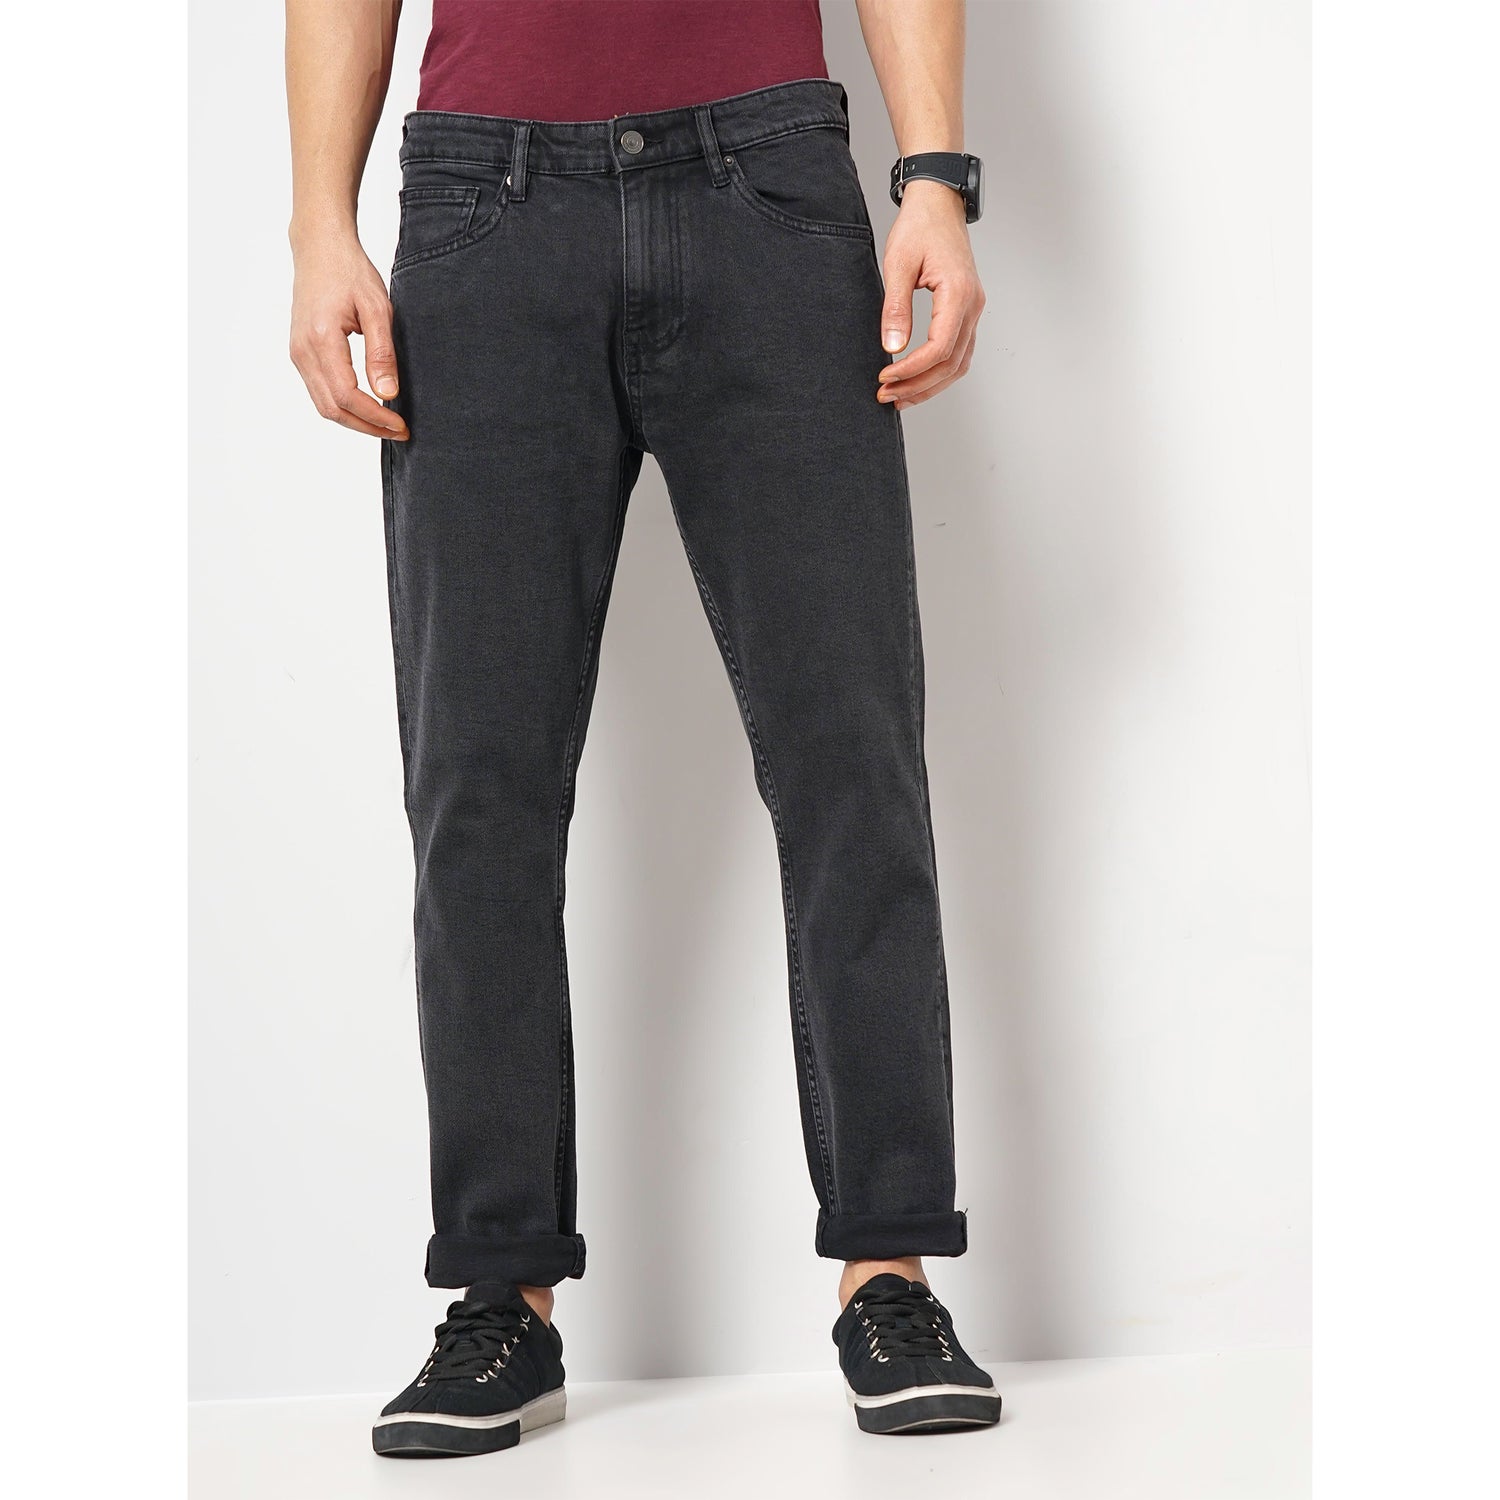 Men's Black Solid Slim Fit Cotton Colored Denim Jeans (GONINETY)